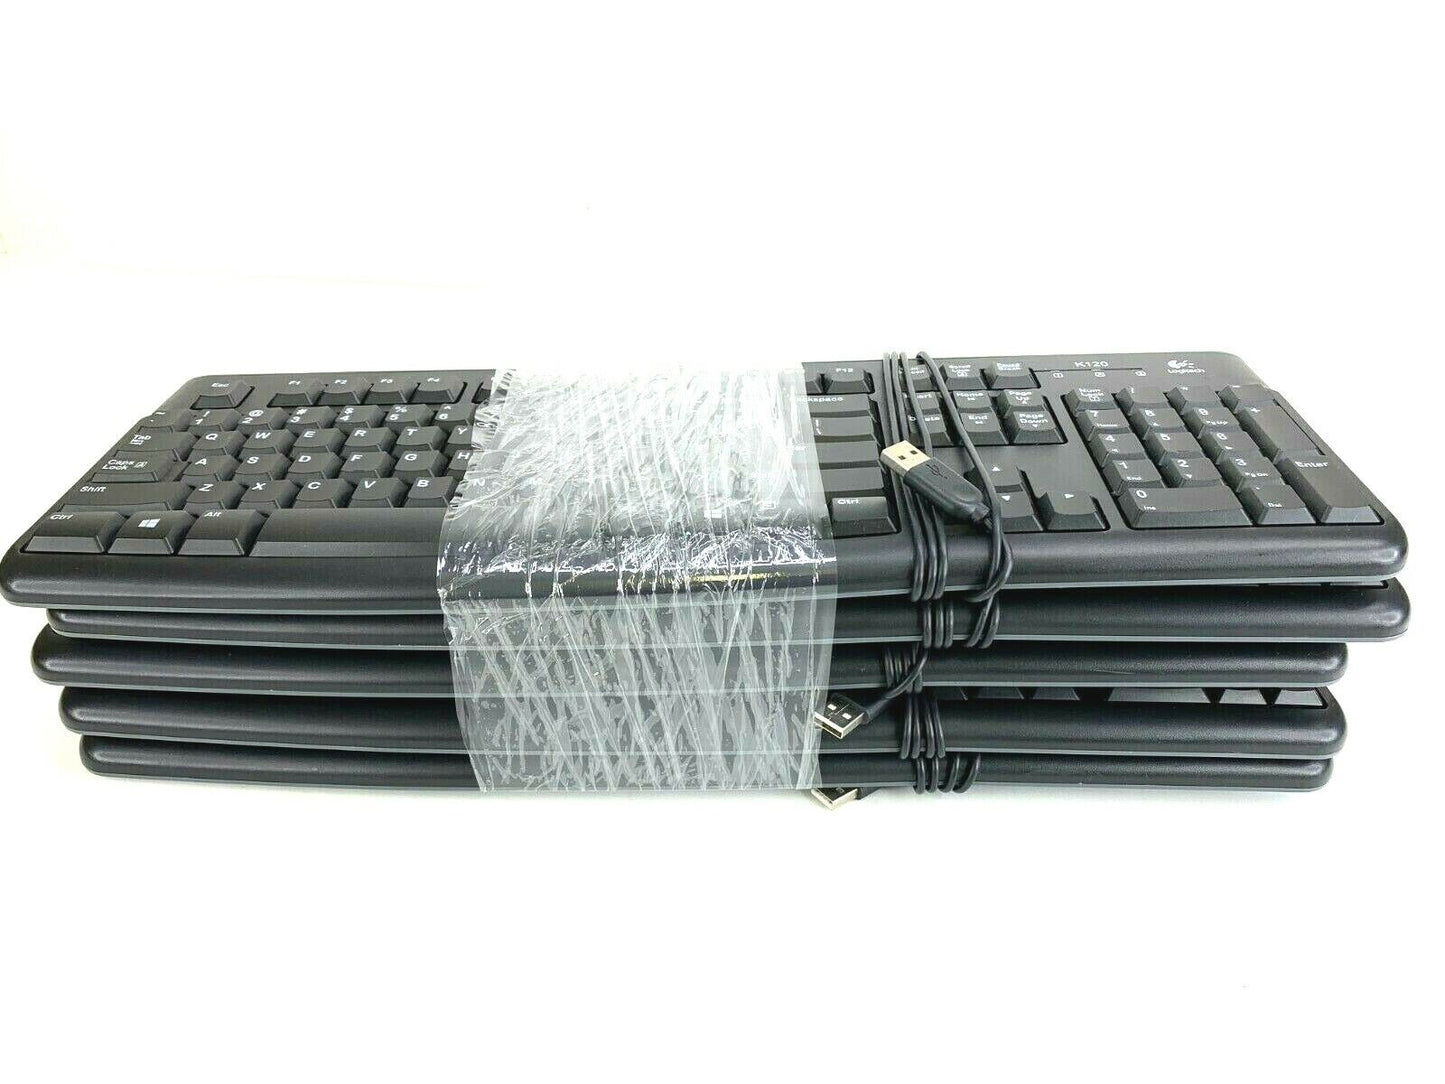 Lot of (5) Logitech K120 USB Wired Keyboard